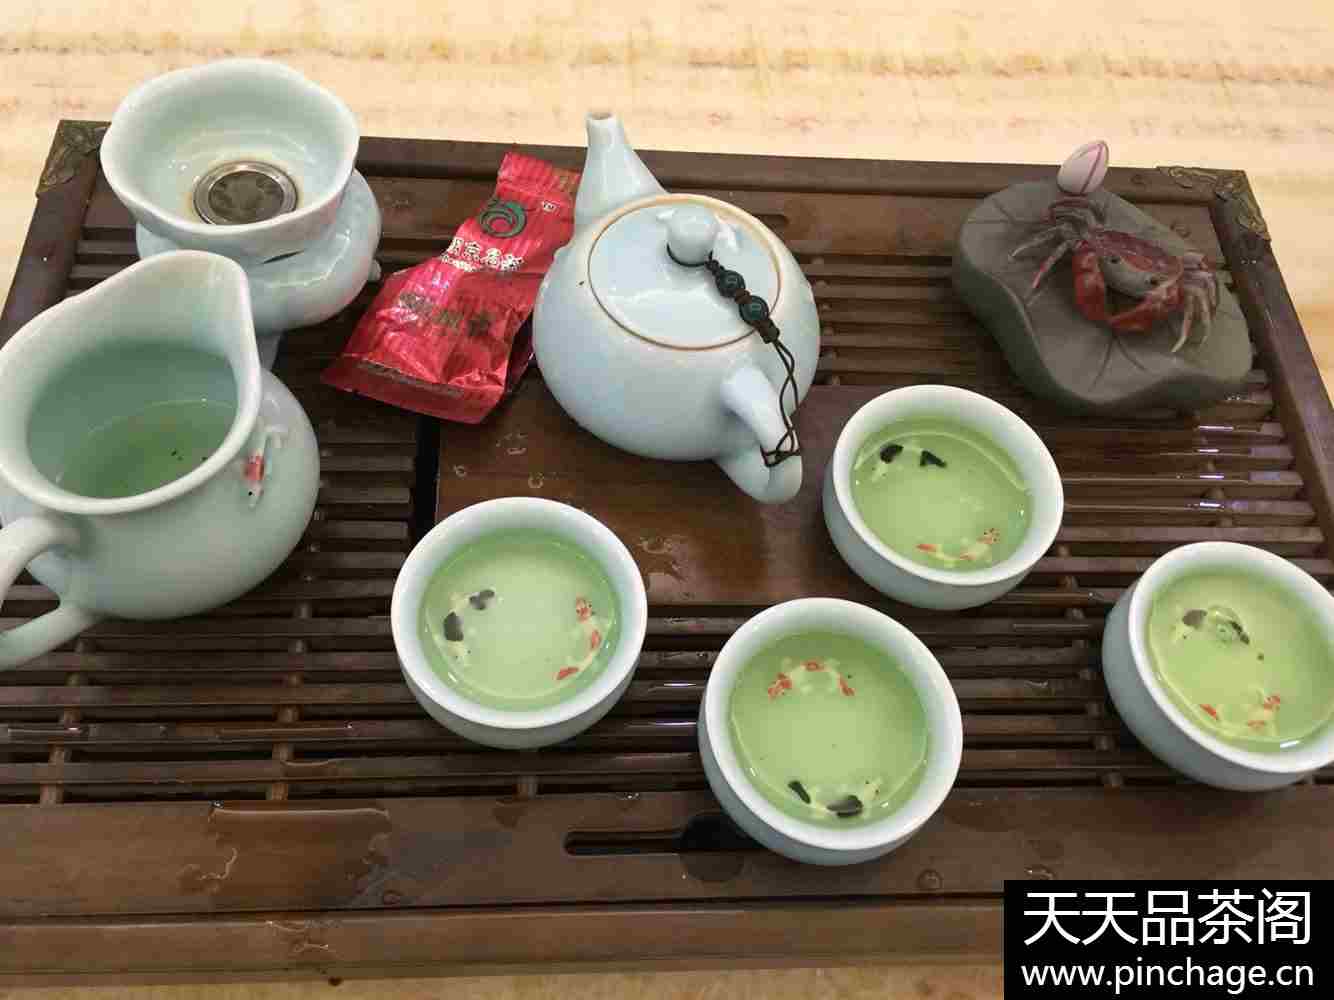 茶叶 安溪铁观音秋茶